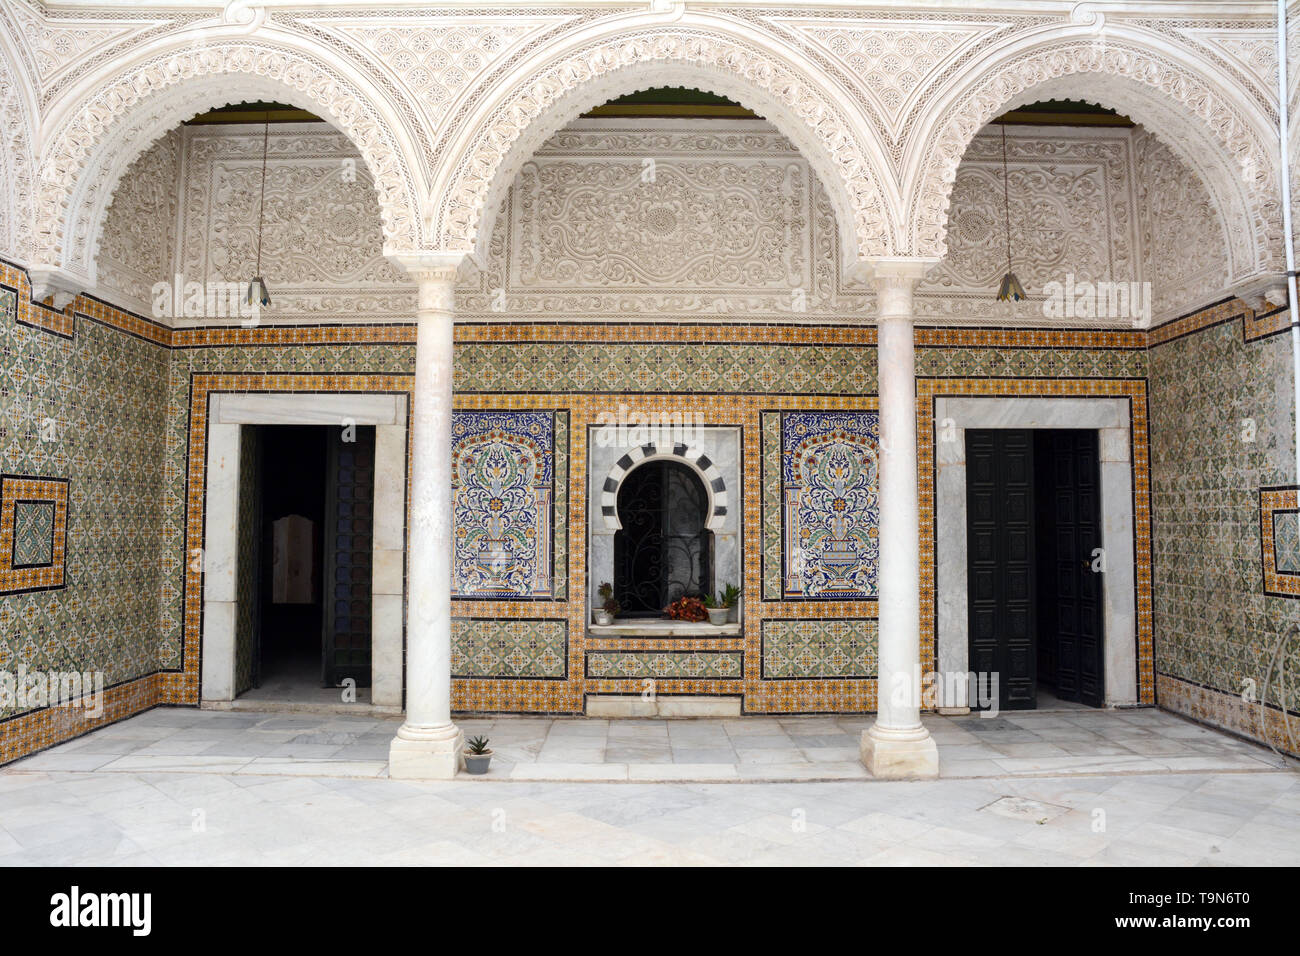 Des motifs architecturaux islamiques et pose de carreaux dans la cour centrale d'un 17e siècle accueil traditionnel dans la médina (vieille ville) de Tunis, Tunisie. Banque D'Images